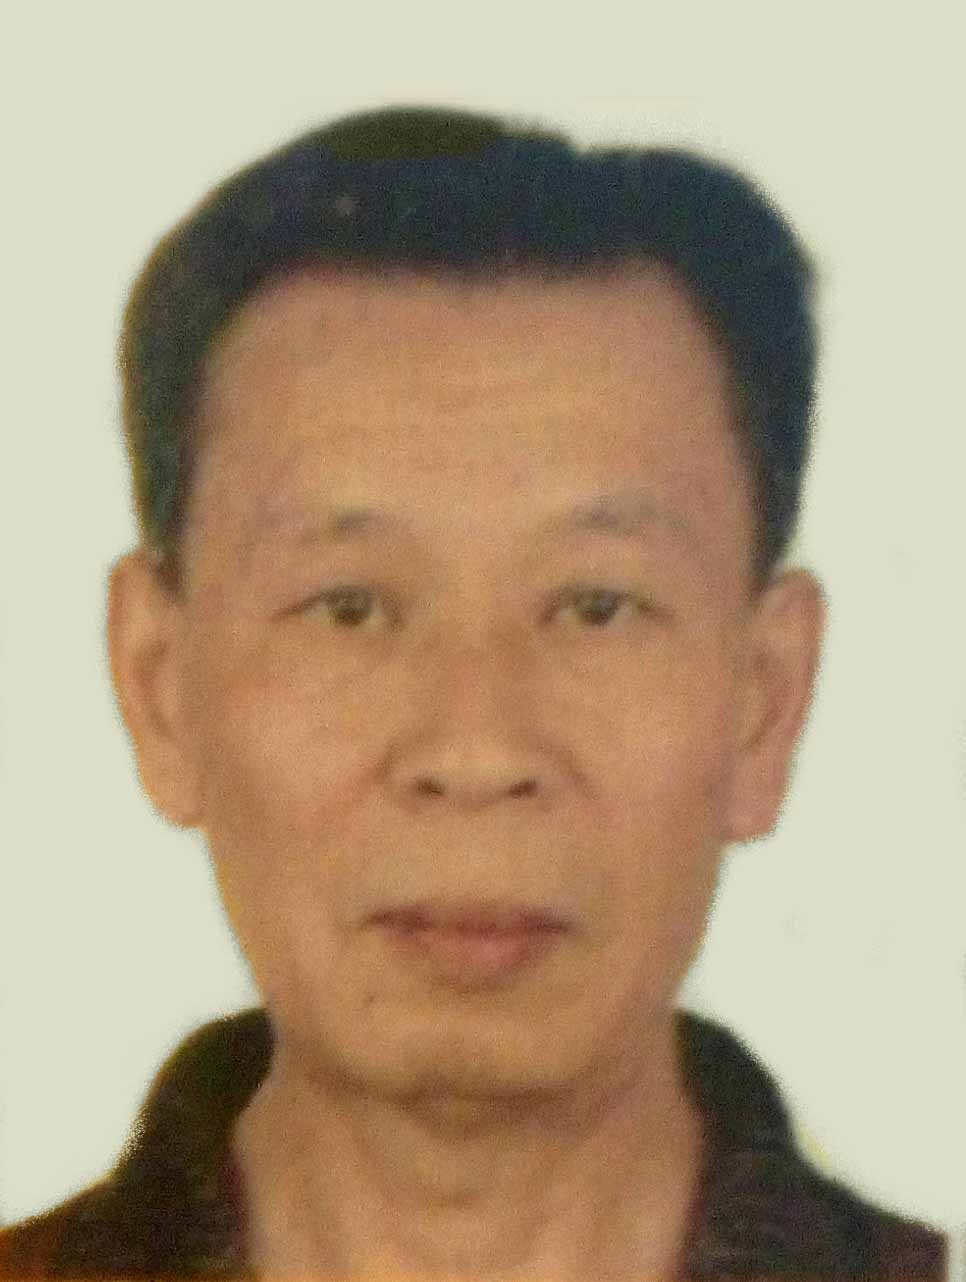 Image for article Un ingénieur retraité de 78 ans reste en détention pour sa croyance, malgré son grave état de santé